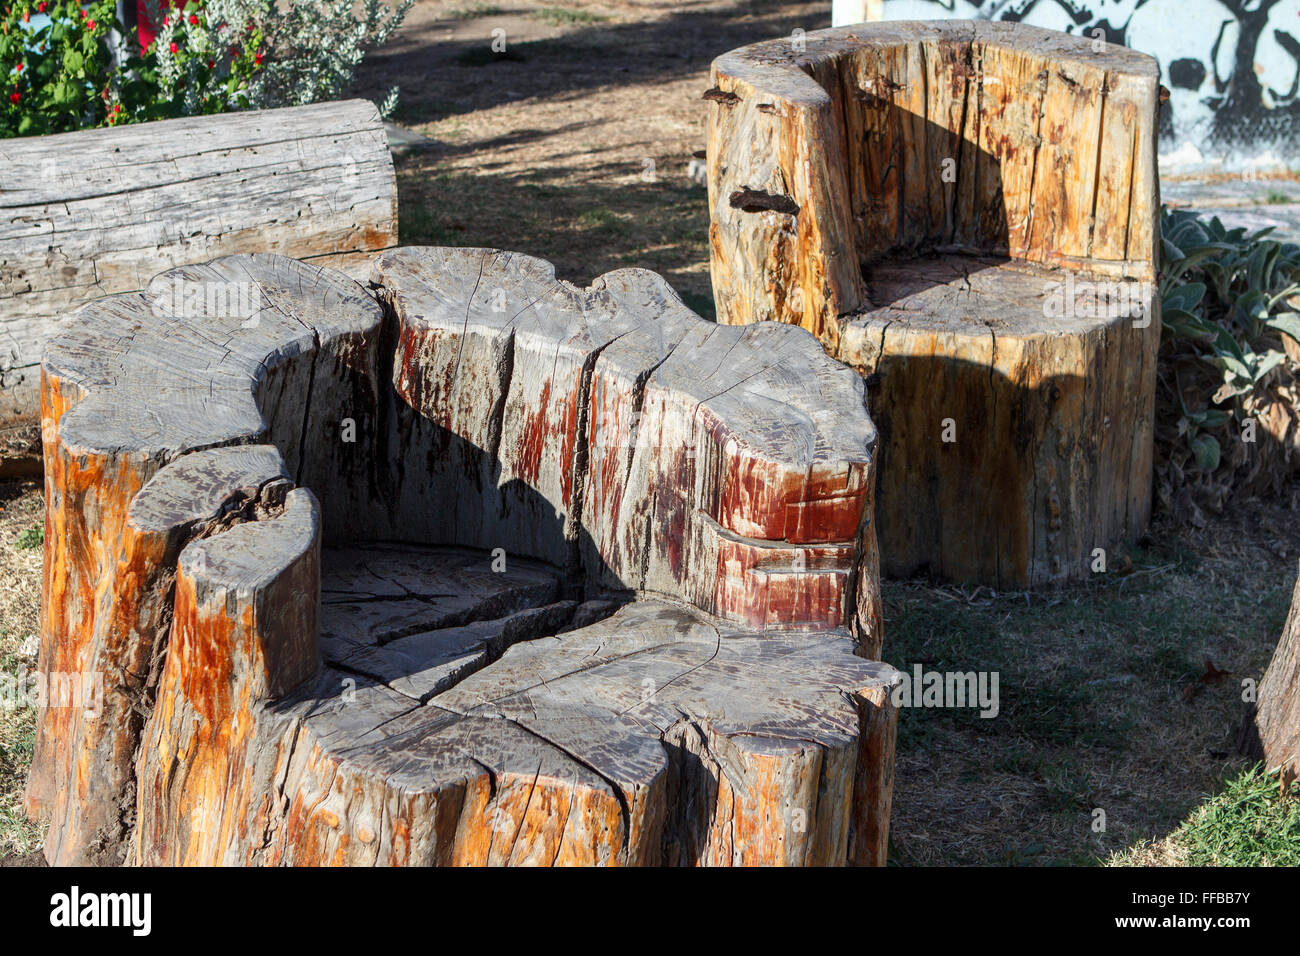 Dallas Deep Ellum Texas sedie intagliate monconi moncone albero di legno di legno Foto Stock